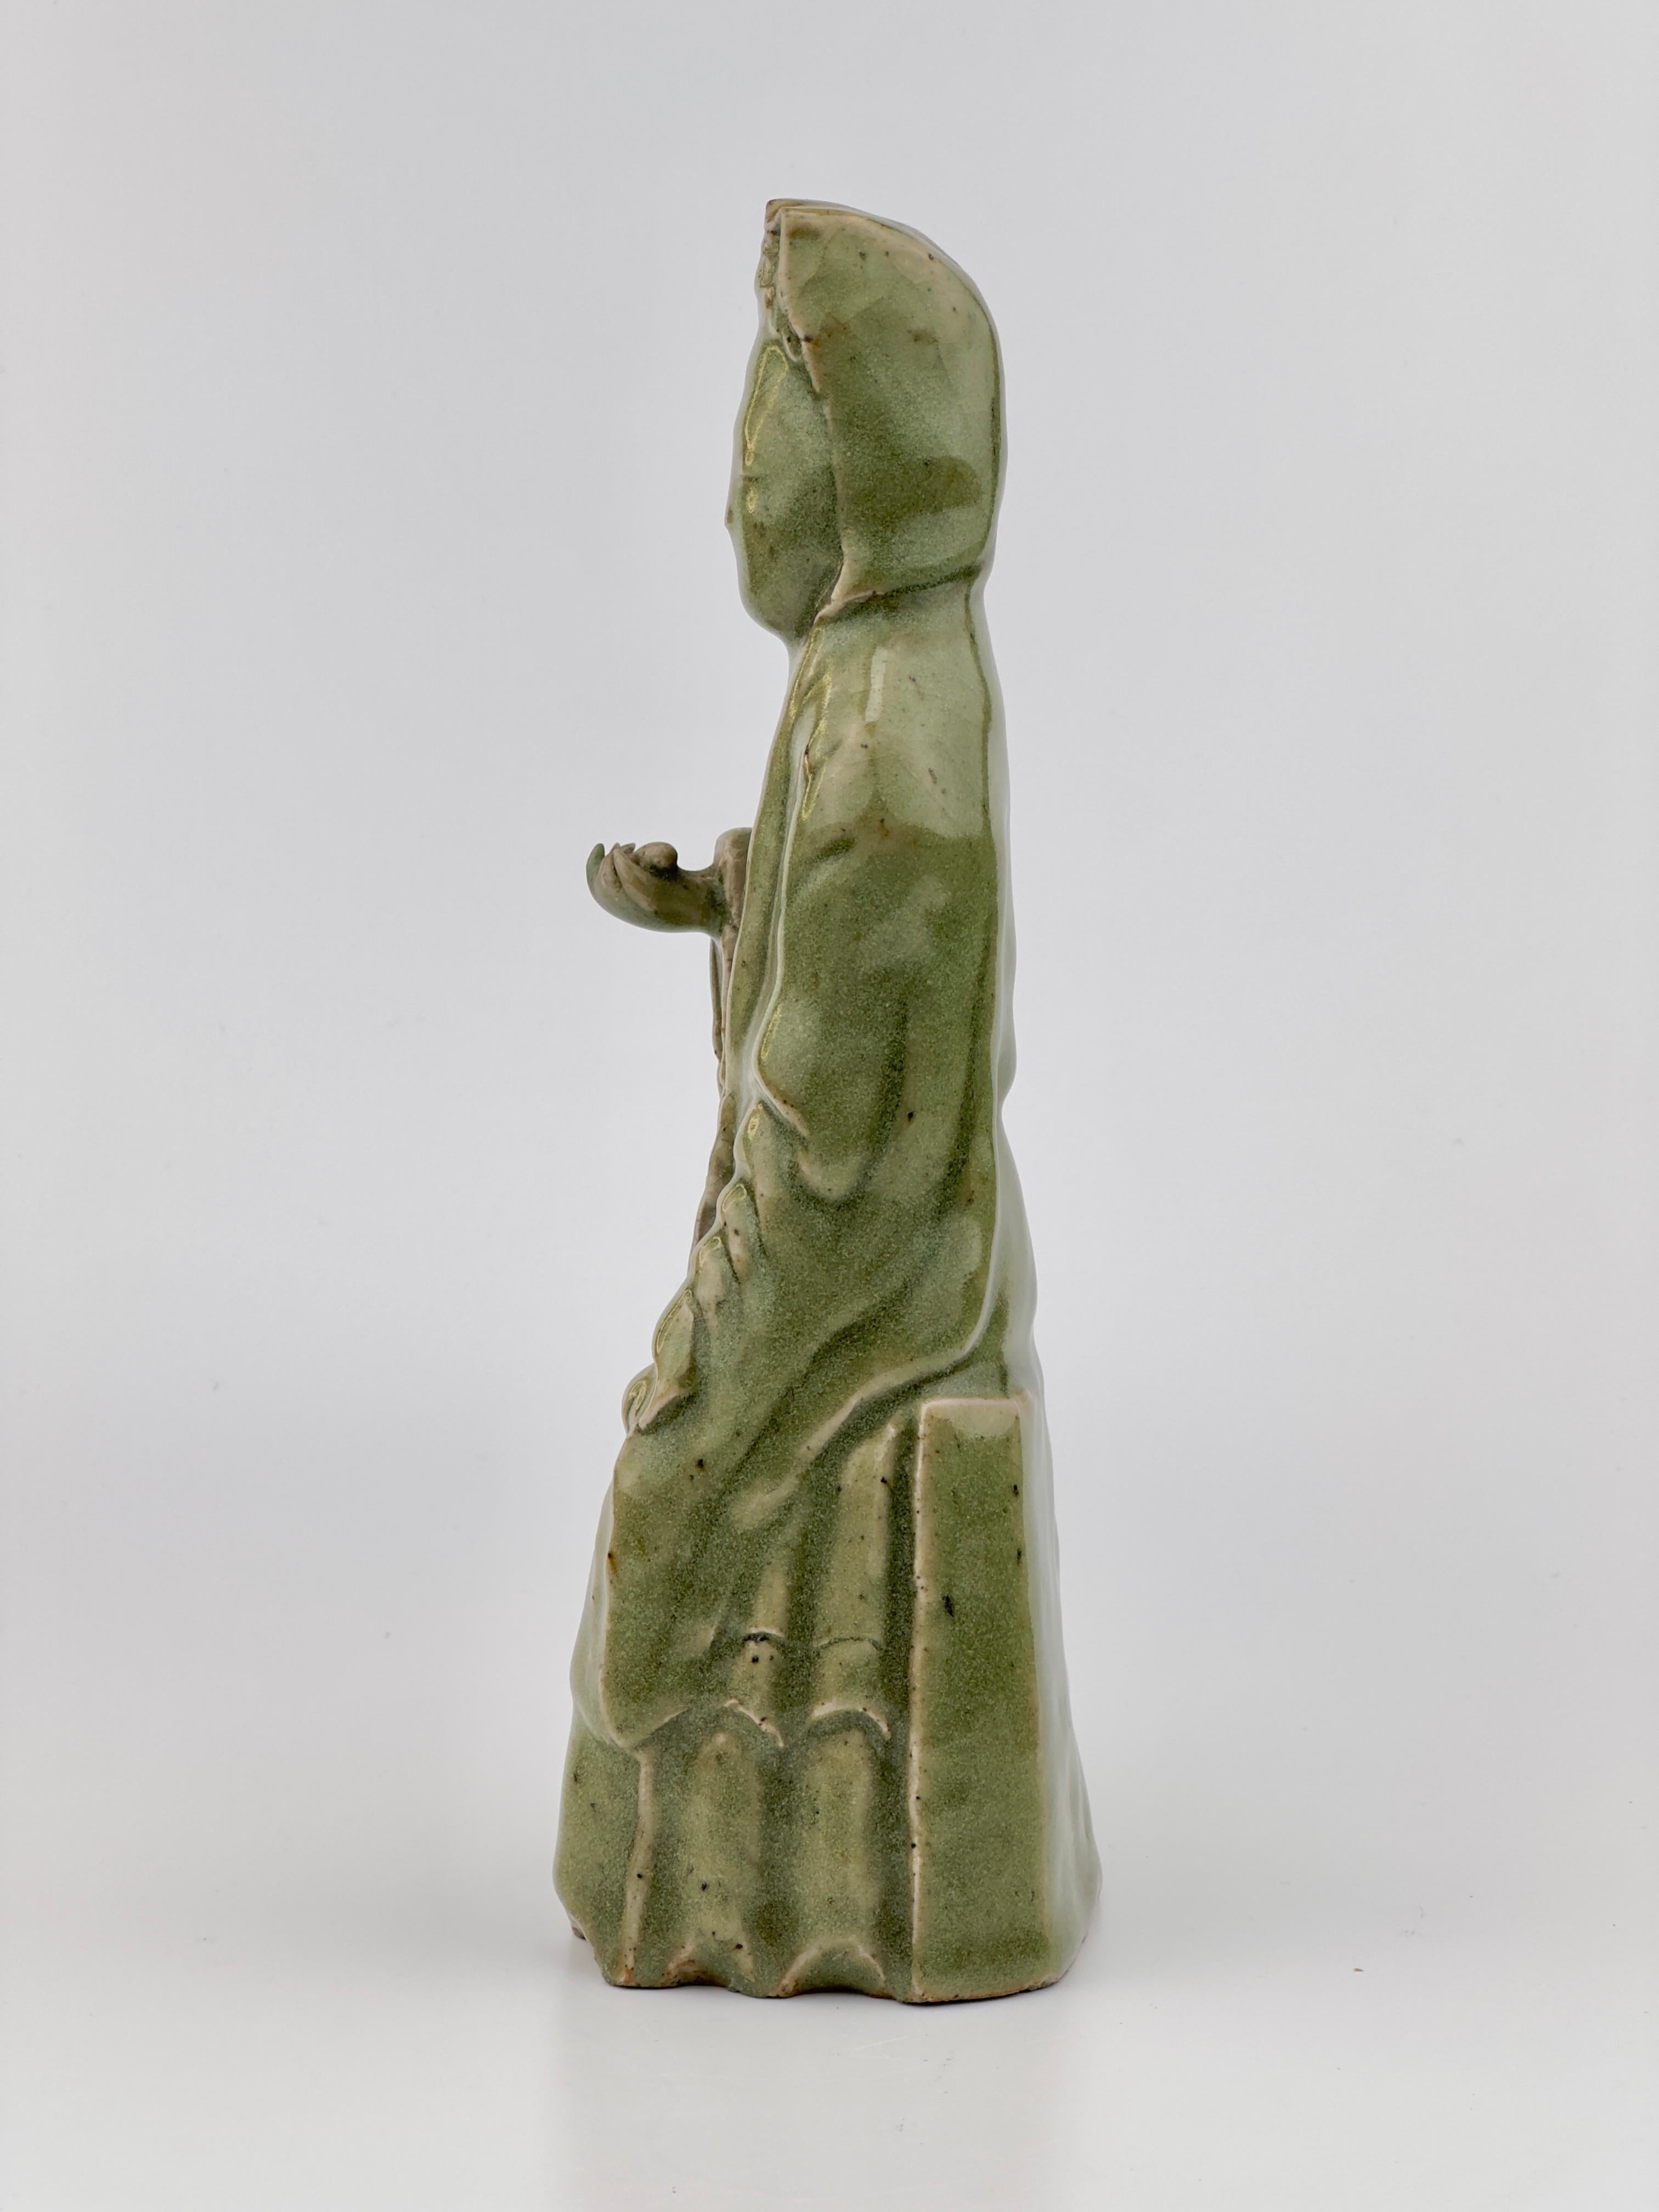 Bei dieser Skulptur handelt es sich um einen Longquan-Celadon aus der Ming-Dynastie, der für seine reiche und jadeartige grüne Glasur bekannt ist. Bei der Figur handelt es sich wahrscheinlich um die Darstellung einer buddhistischen Gottheit oder